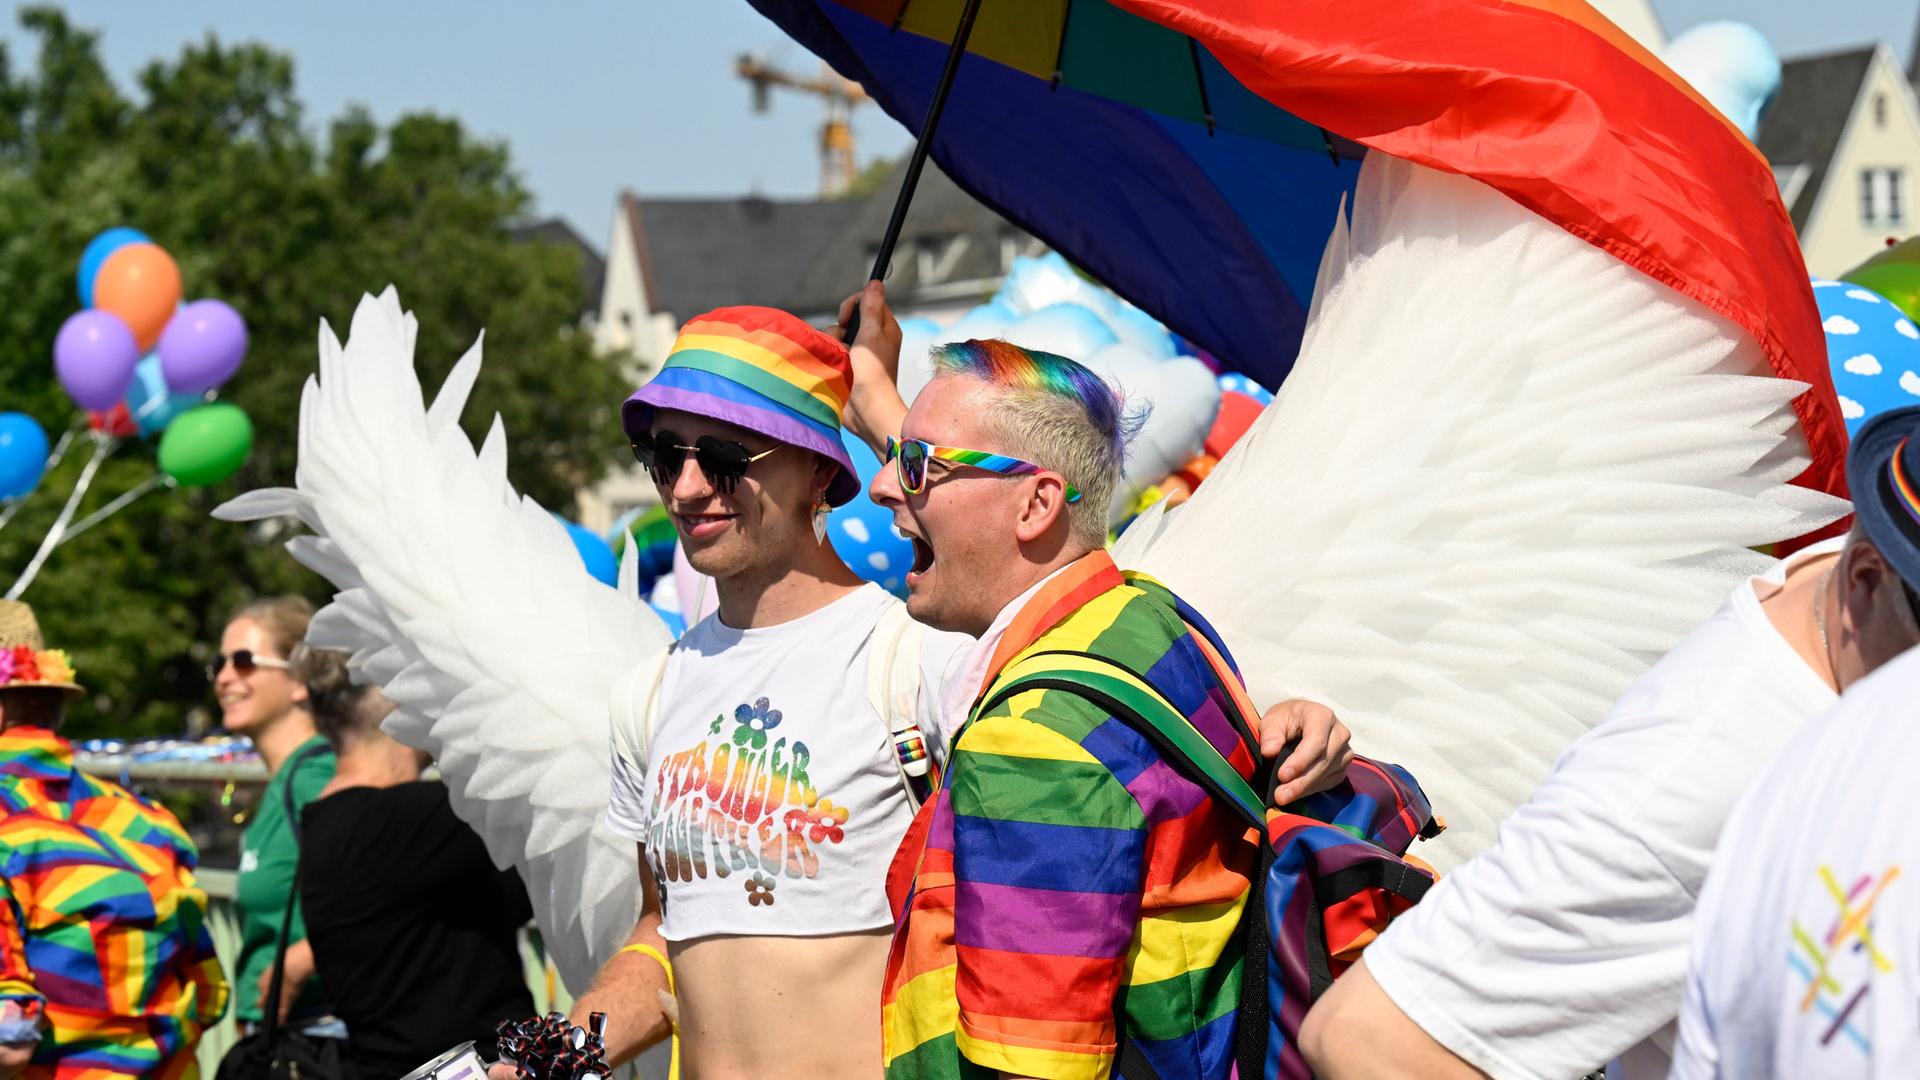 Zwei verkleidete Männer bei der Pride-Parade in Köln. Einer von den Männern hat Kleidung in Regenbogen-Farben an. Einer trägt weiße Flügel wie ein Engel.